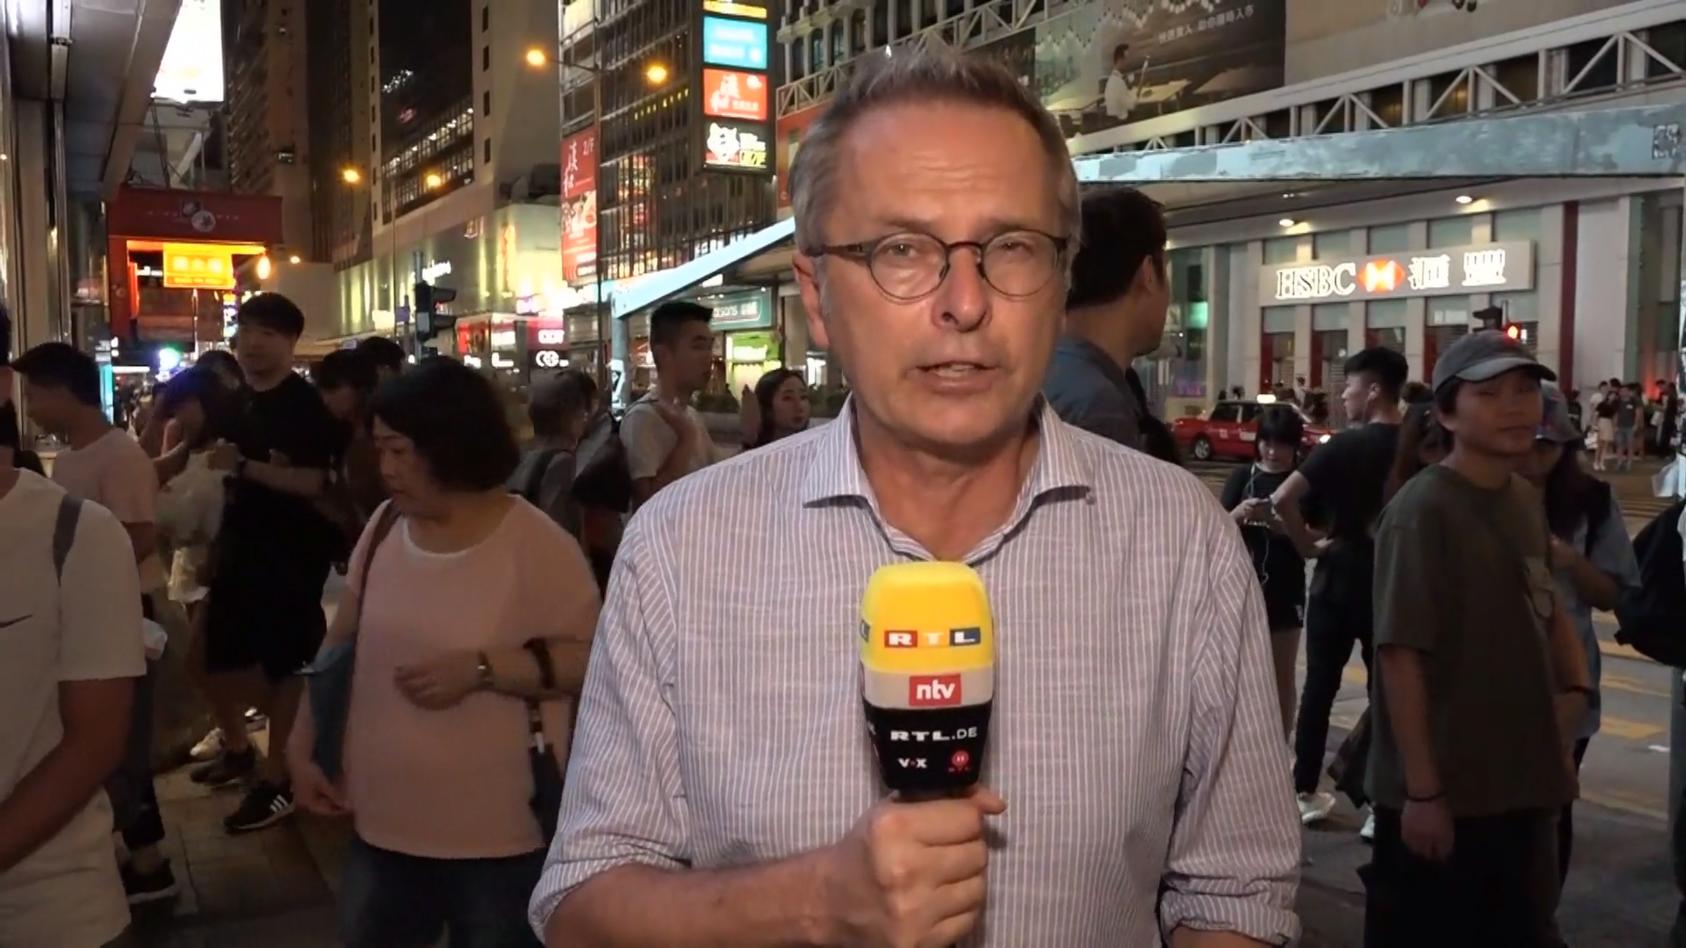 RTL-Reporter Dirk Emmerich in Hongkong Neue Proteste am Sonntag erwartet